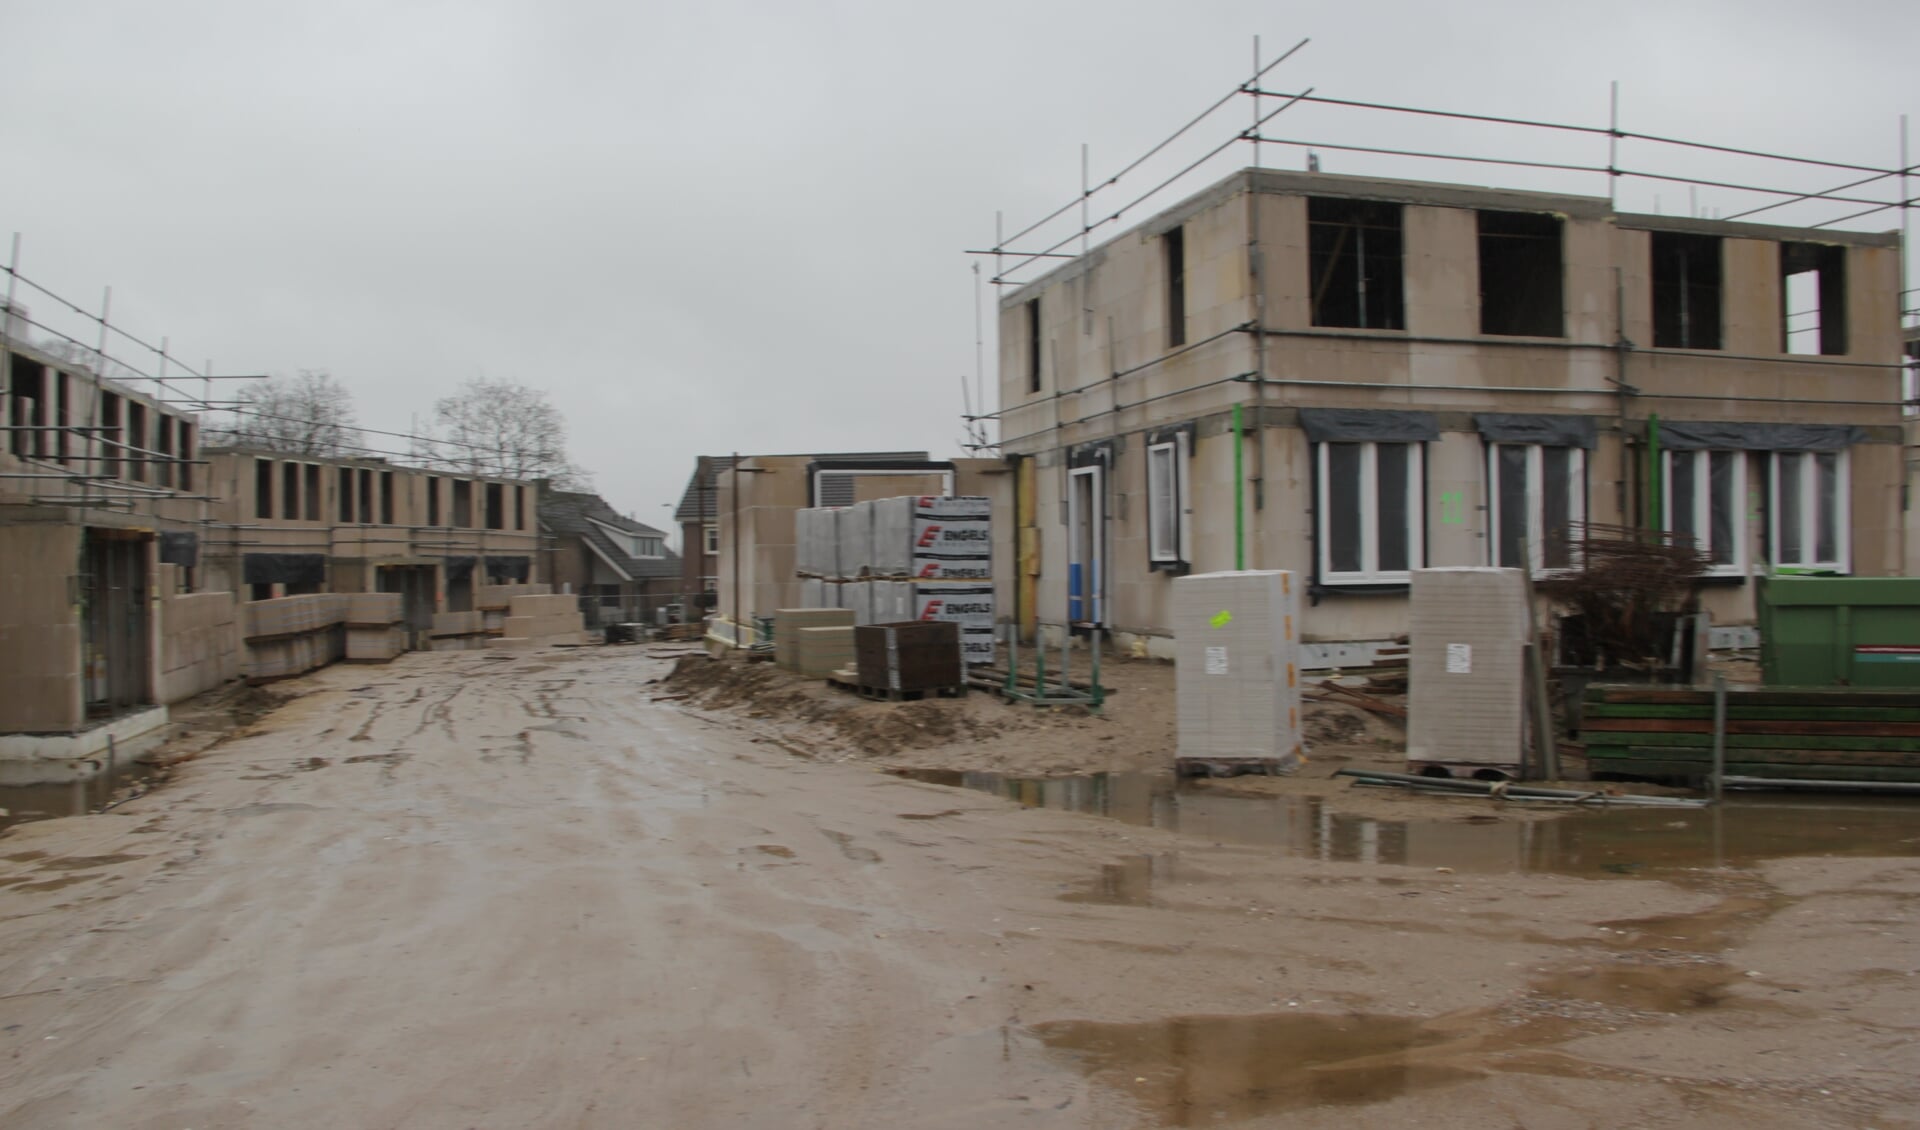 Nieuwe woonwijk in wording op terrein van Schreven. 